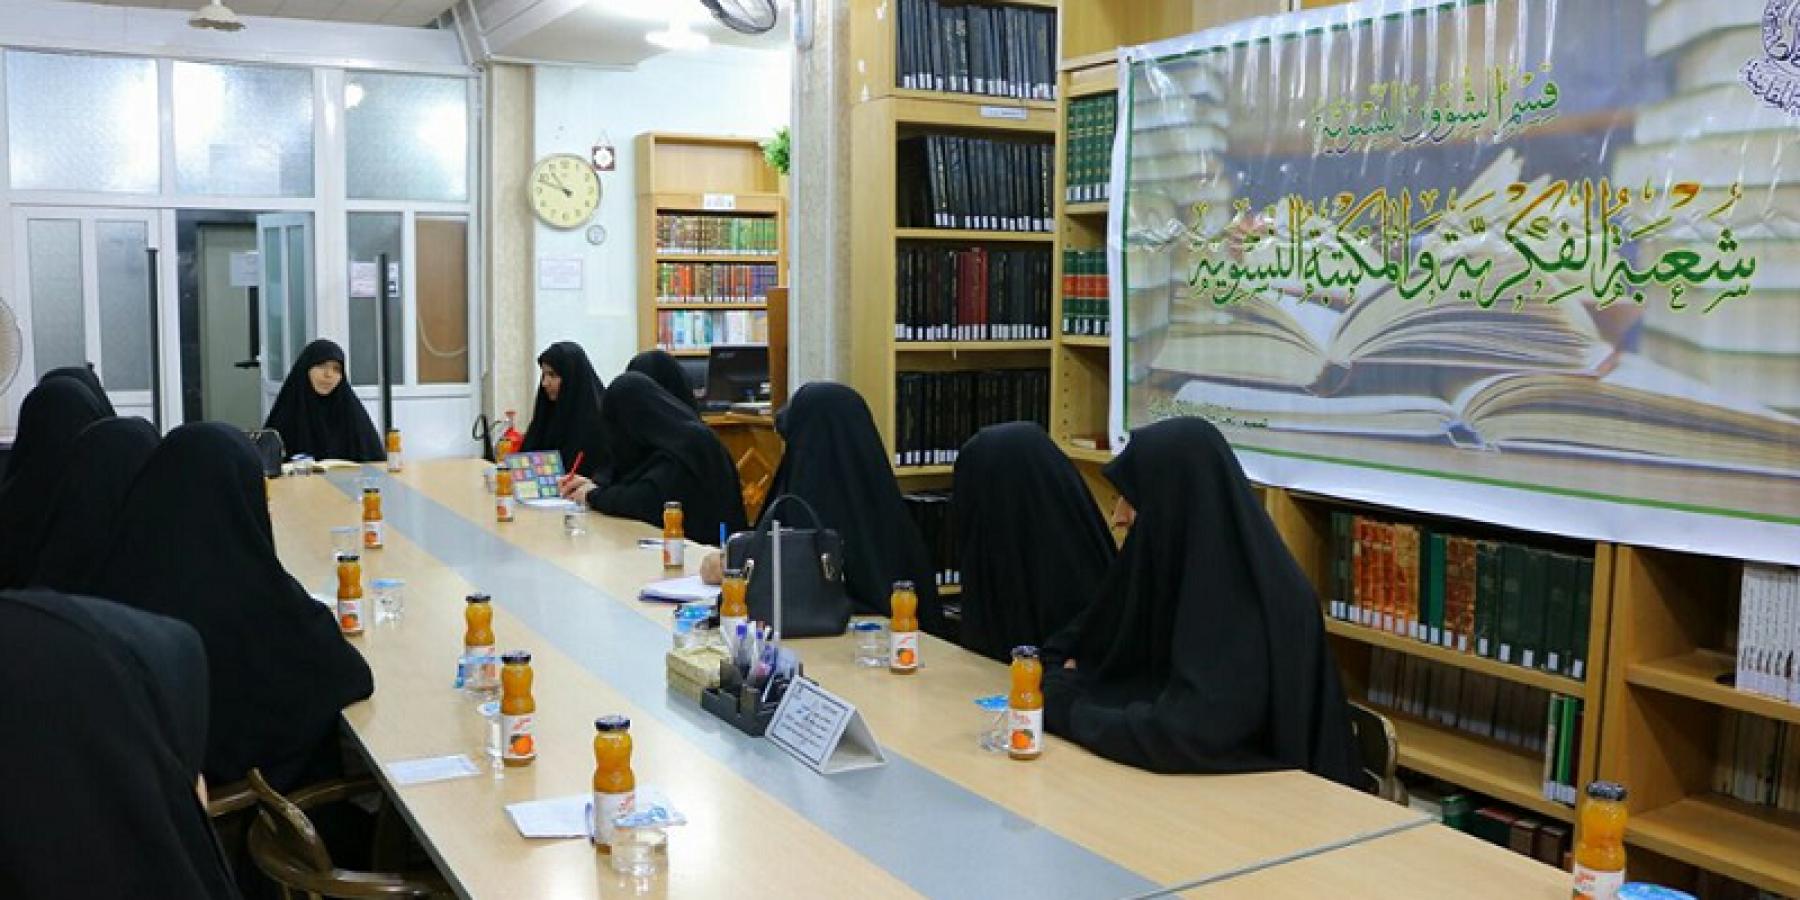 شعبة الفكرية والمكتبة النسوية في العتبة العلوية المقدسة تقيمان برنامجها الثقافي(كتاب تحت المجهر)